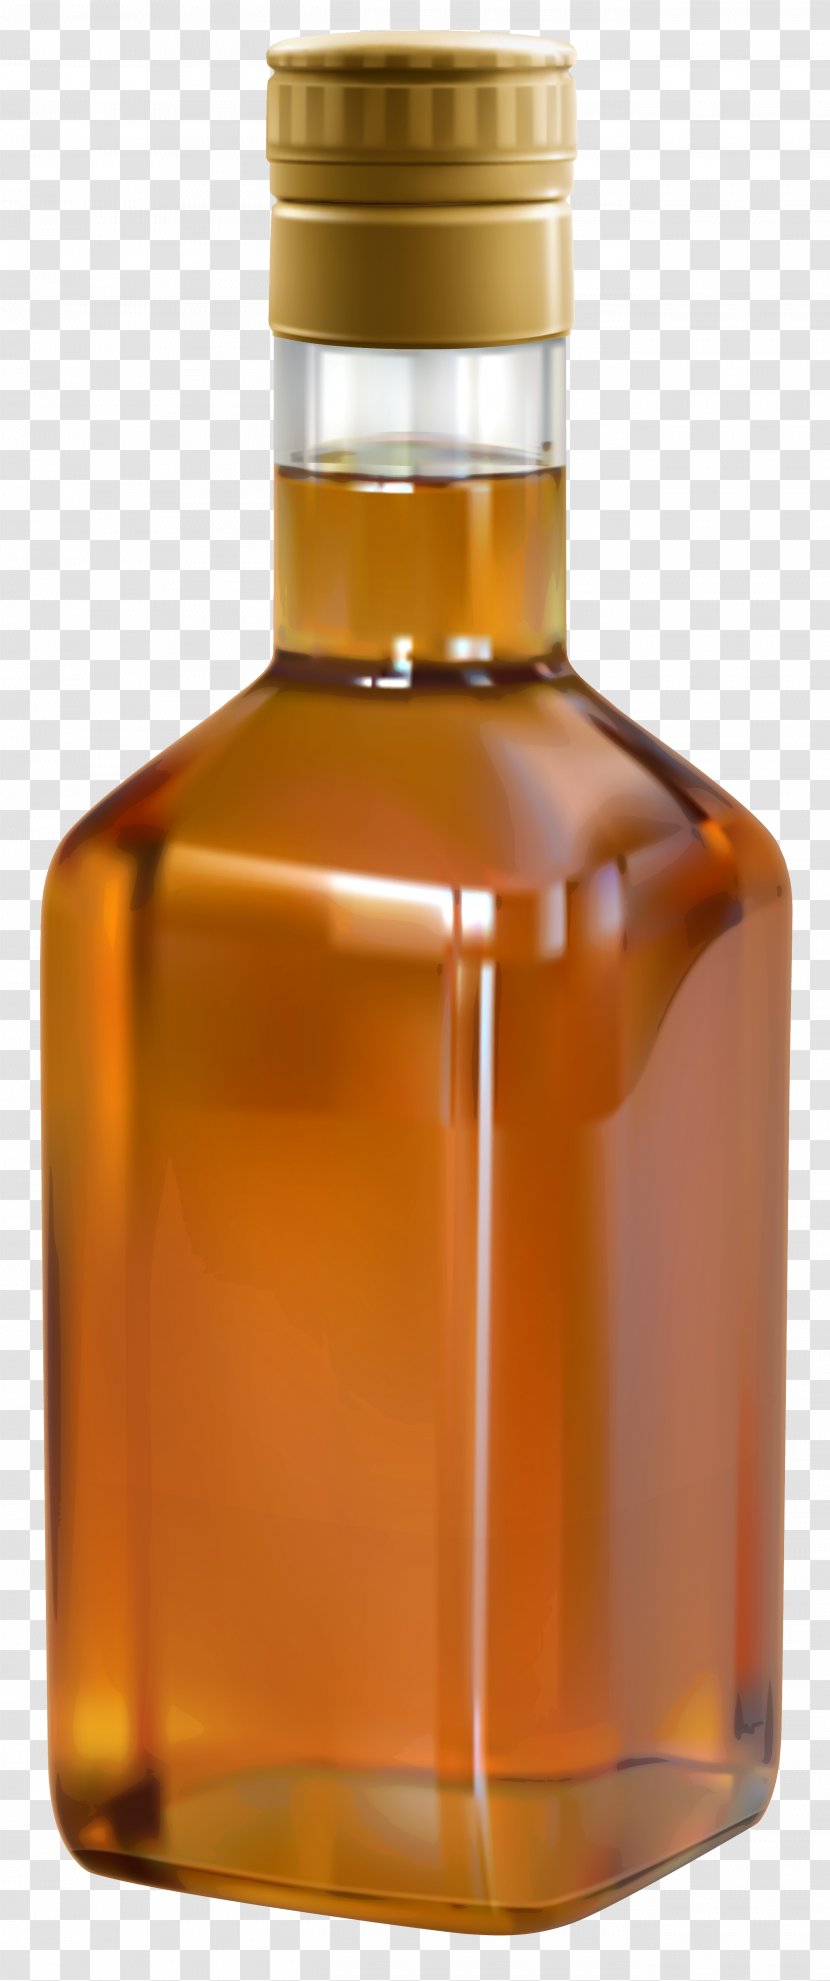 Bourbon Whiskey Scotch Whisky Single Malt Distilled Beverage - Bottle Transparent PNG